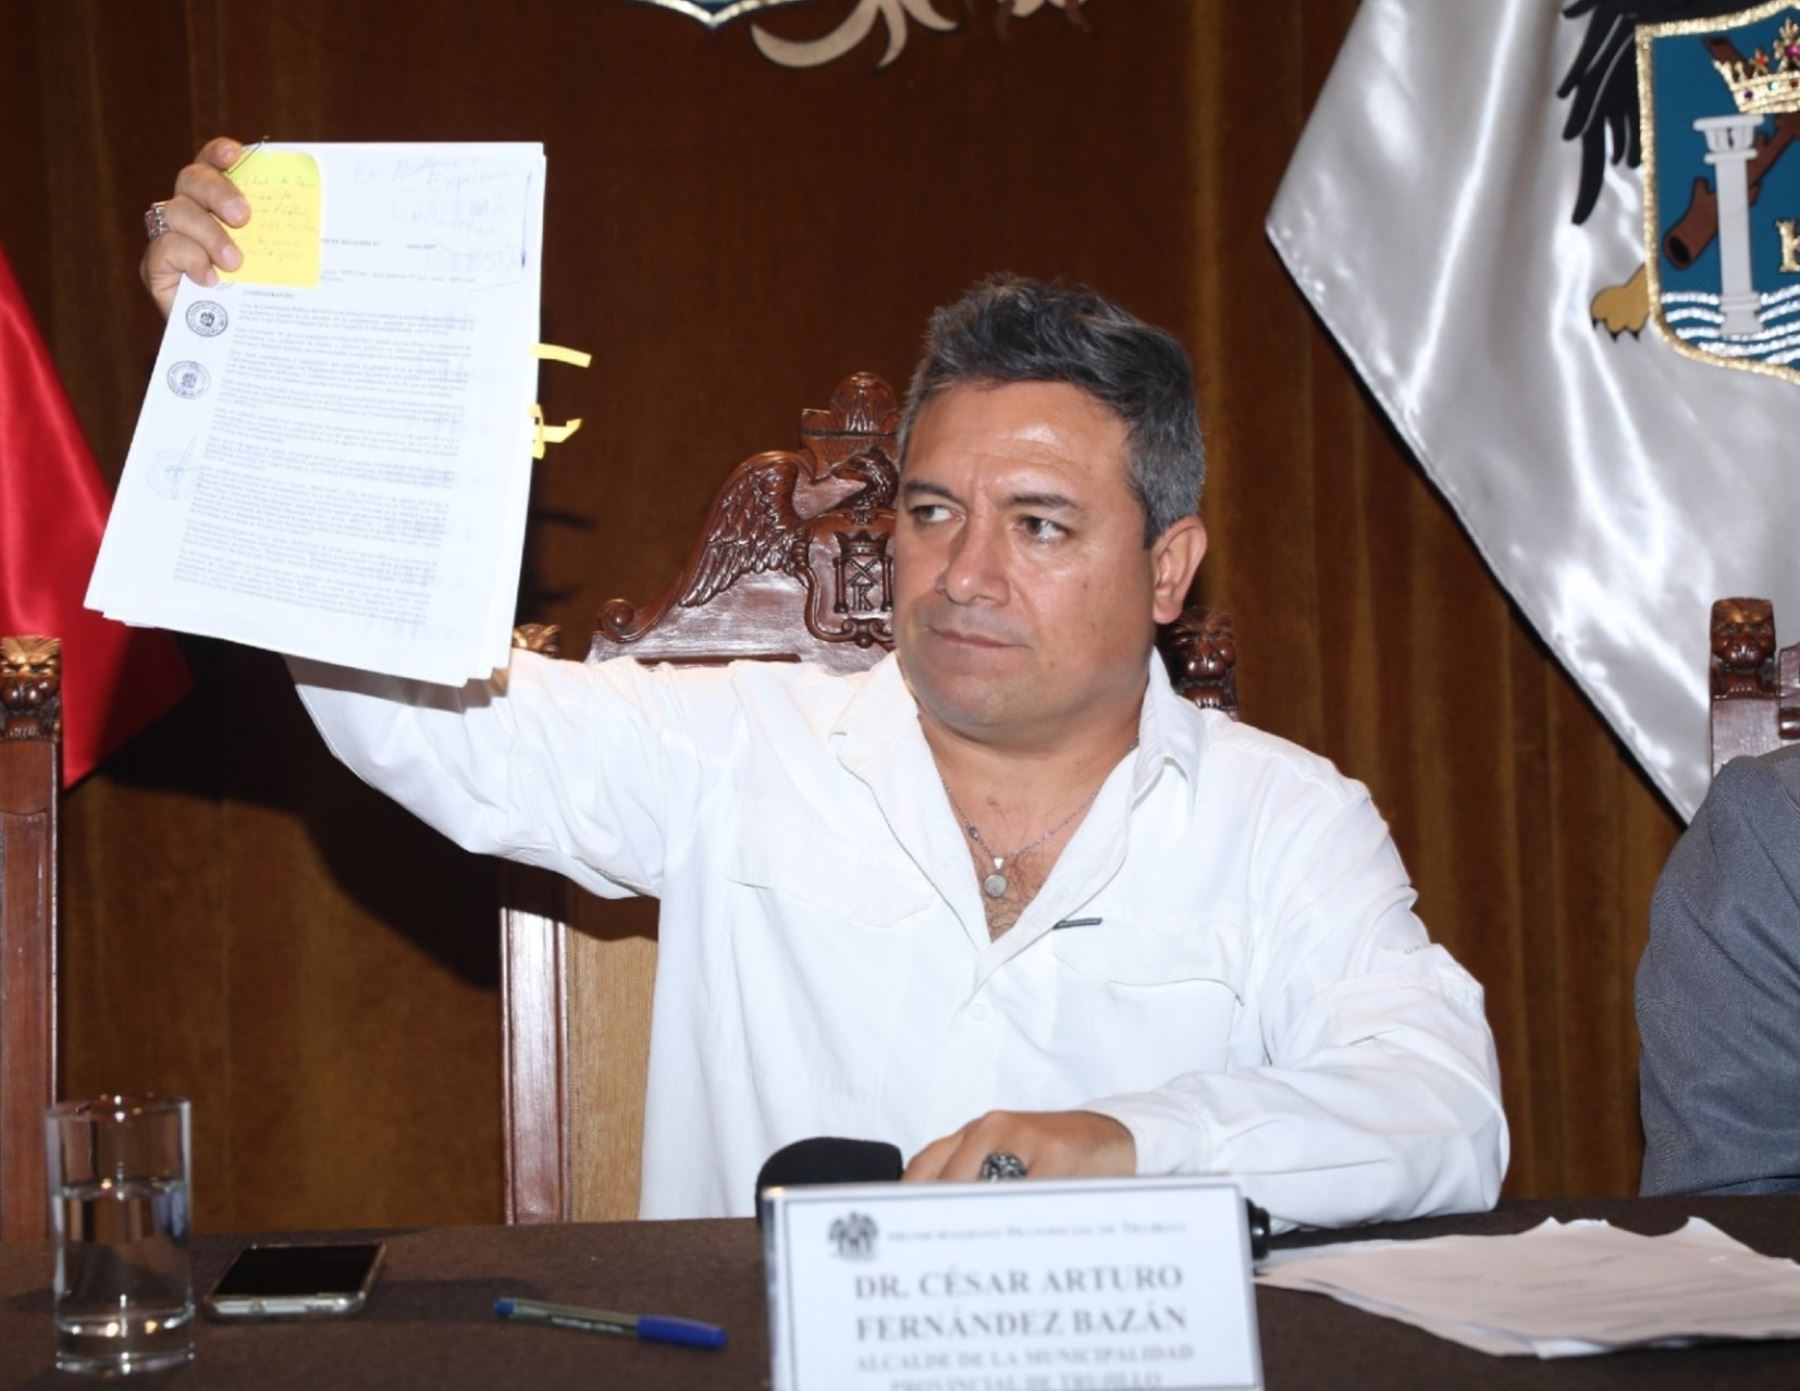 El alcalde provincial de Trujillo, César Arturo Fernández, enfrenta hoy un nuevo pedido de suspensión debido a la condena recibida por el Poder Judicial por el delito de difamación agravada.